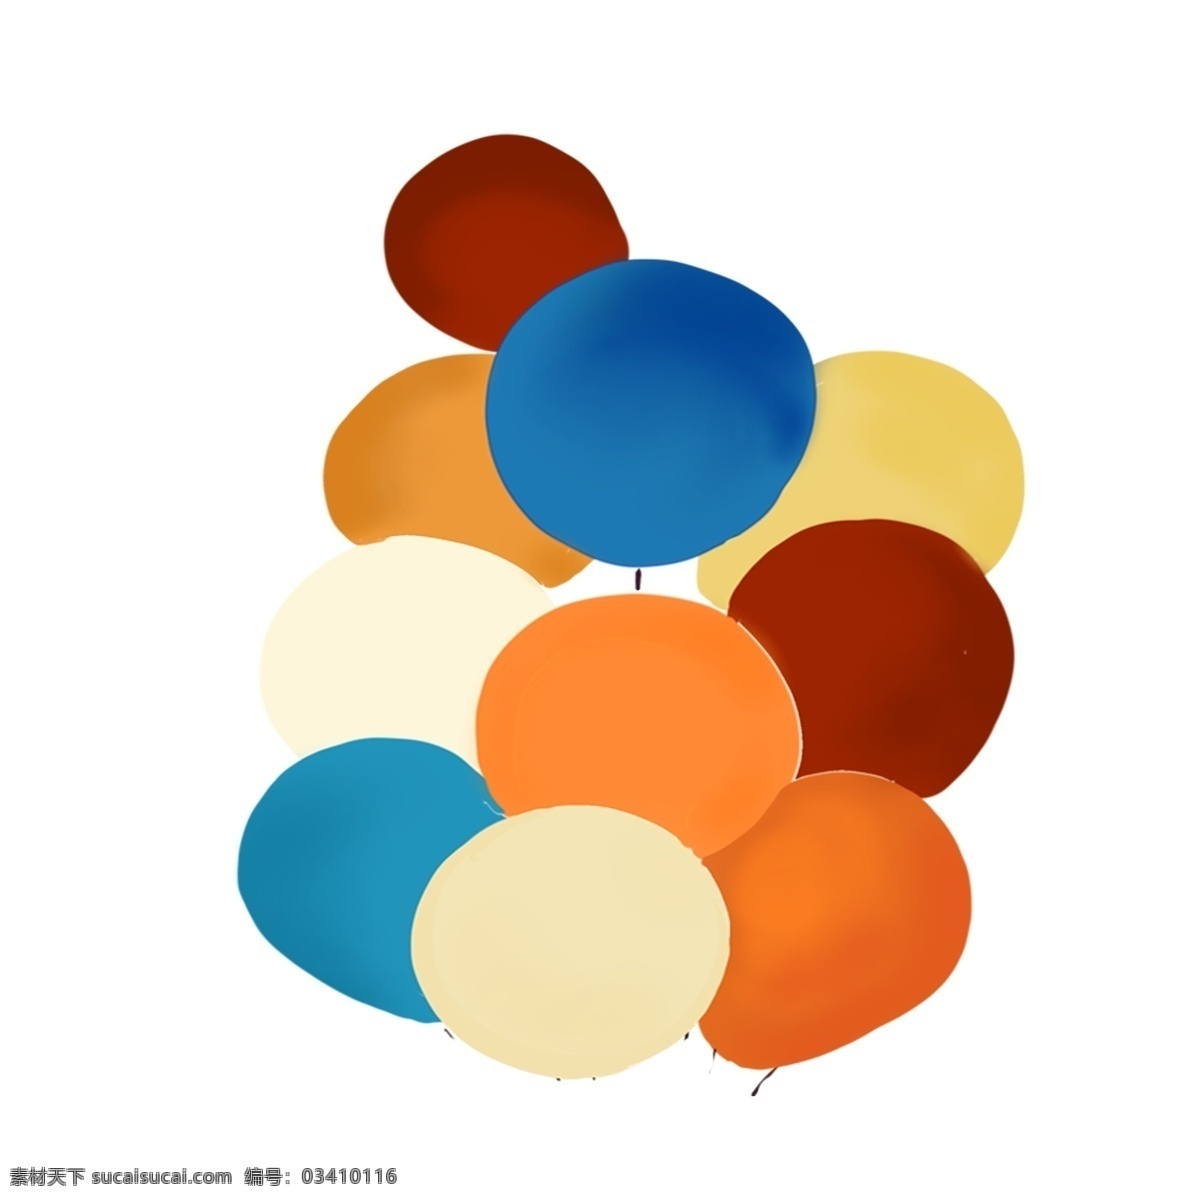 卡通 彩色 气球 免 抠 图 球 卡通球 节日布置 氢气球 节日气球 天空中的气球 免抠图